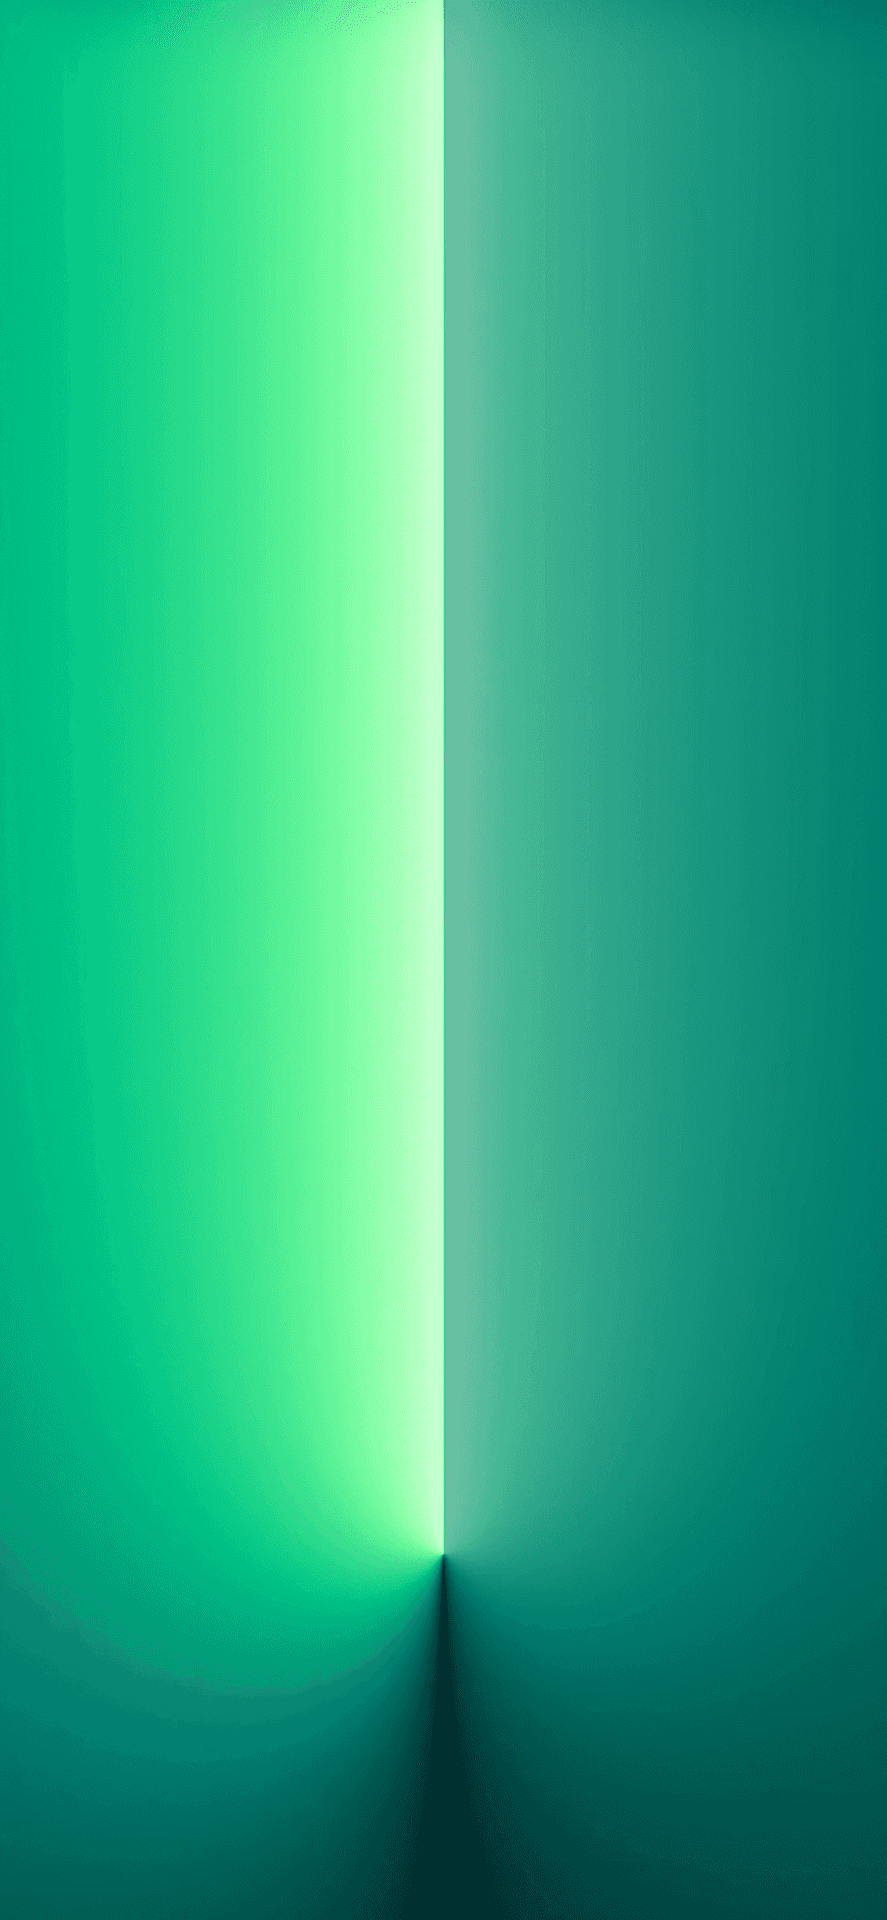 Eingrünes Licht, Das Auf Einem Grünen Hintergrund Leuchtet